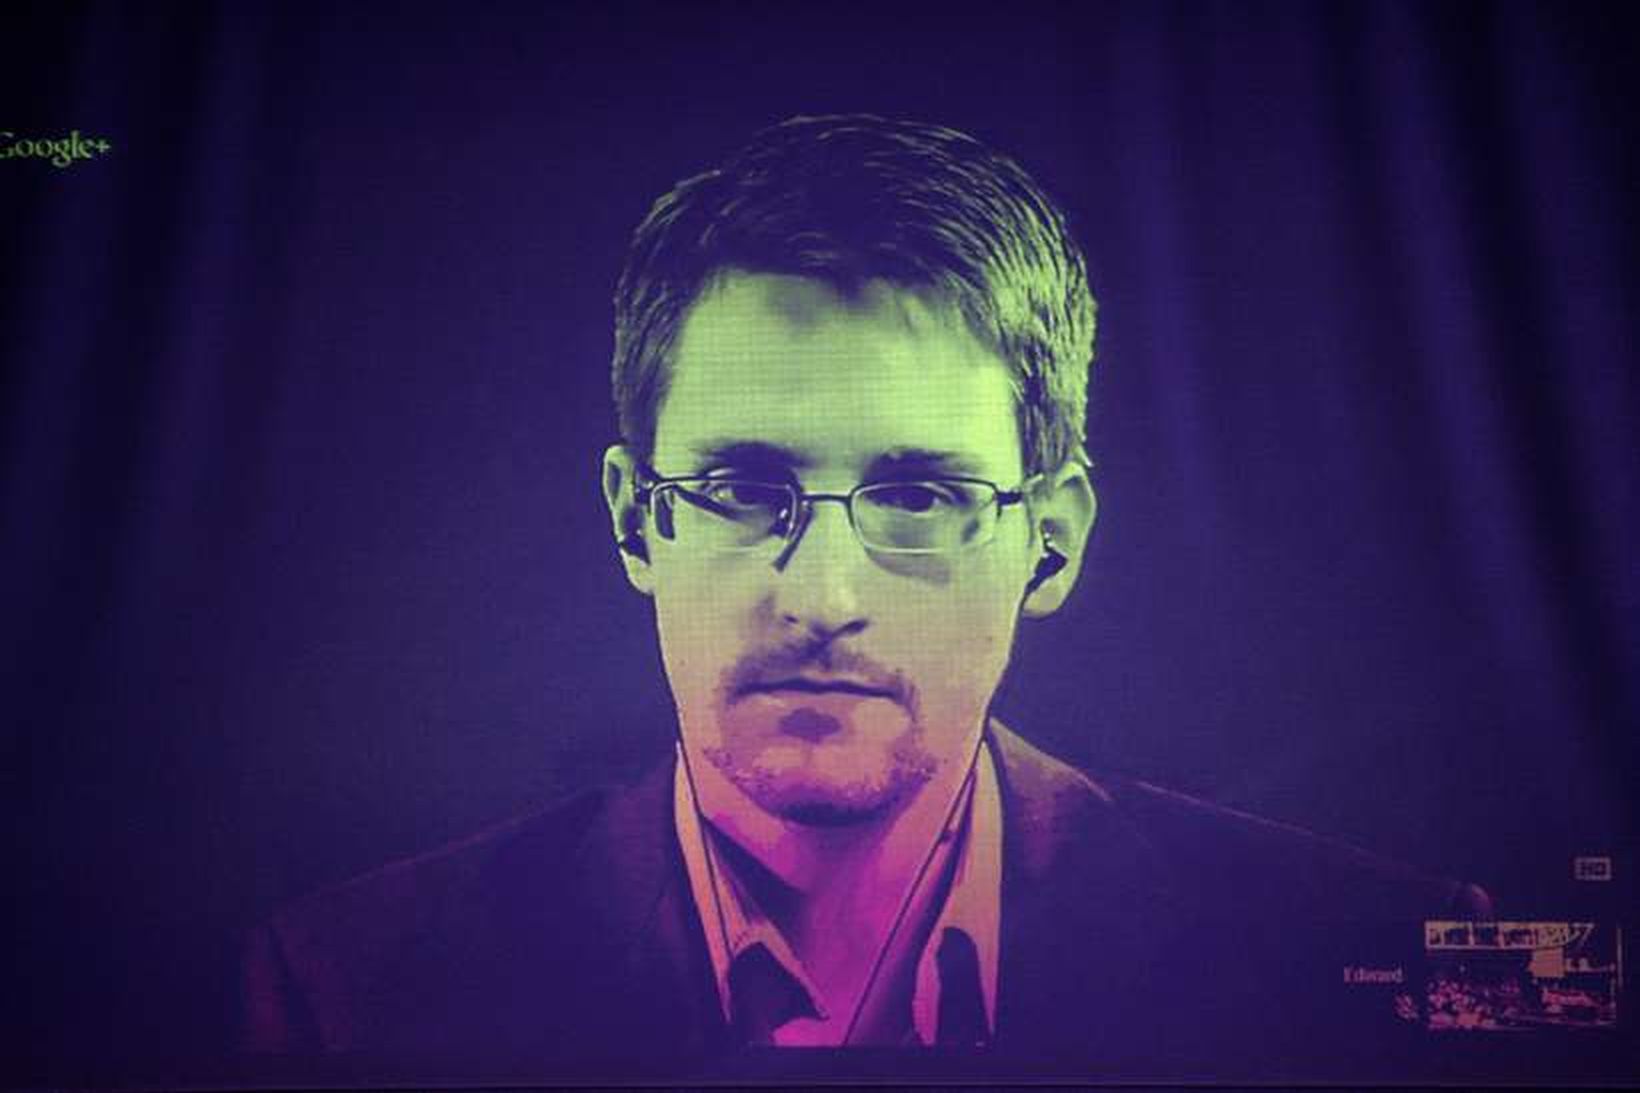 Edward Snowden býr nú í Moskvu. Fólkinu sem skaut skjólshúsi …